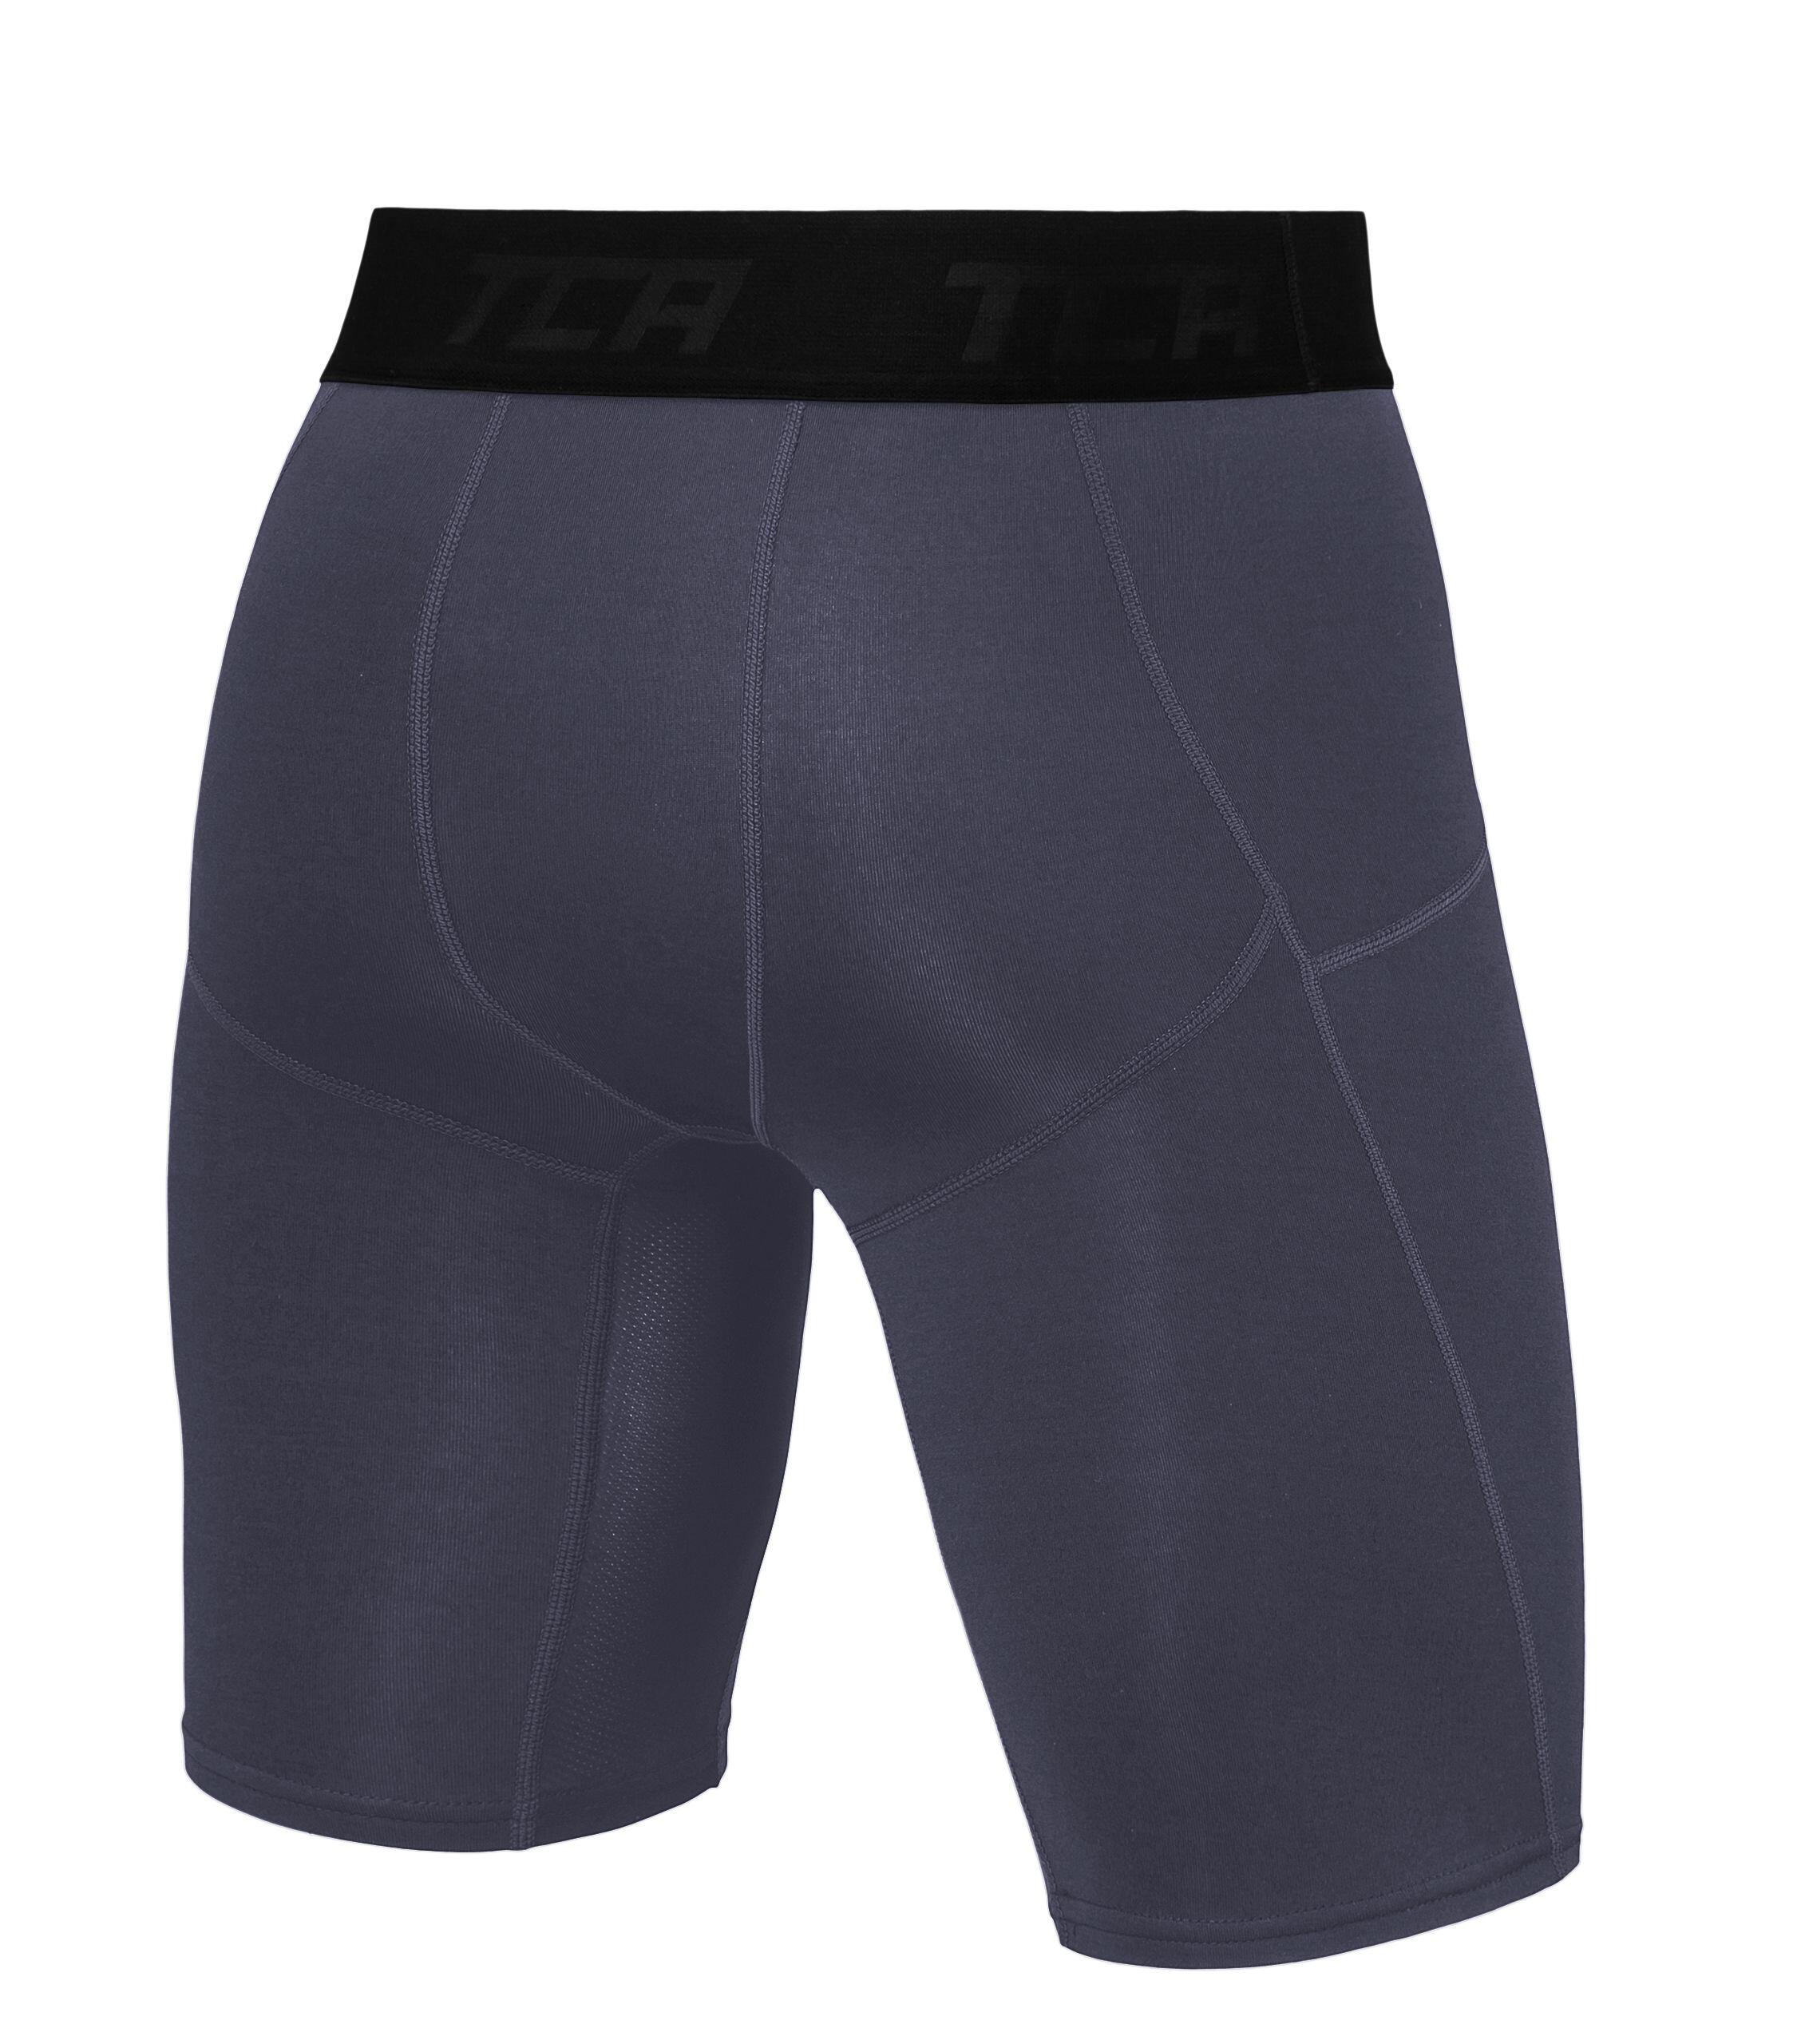 Boys' Super Thermal Compression Shorts - Graphite 3/5